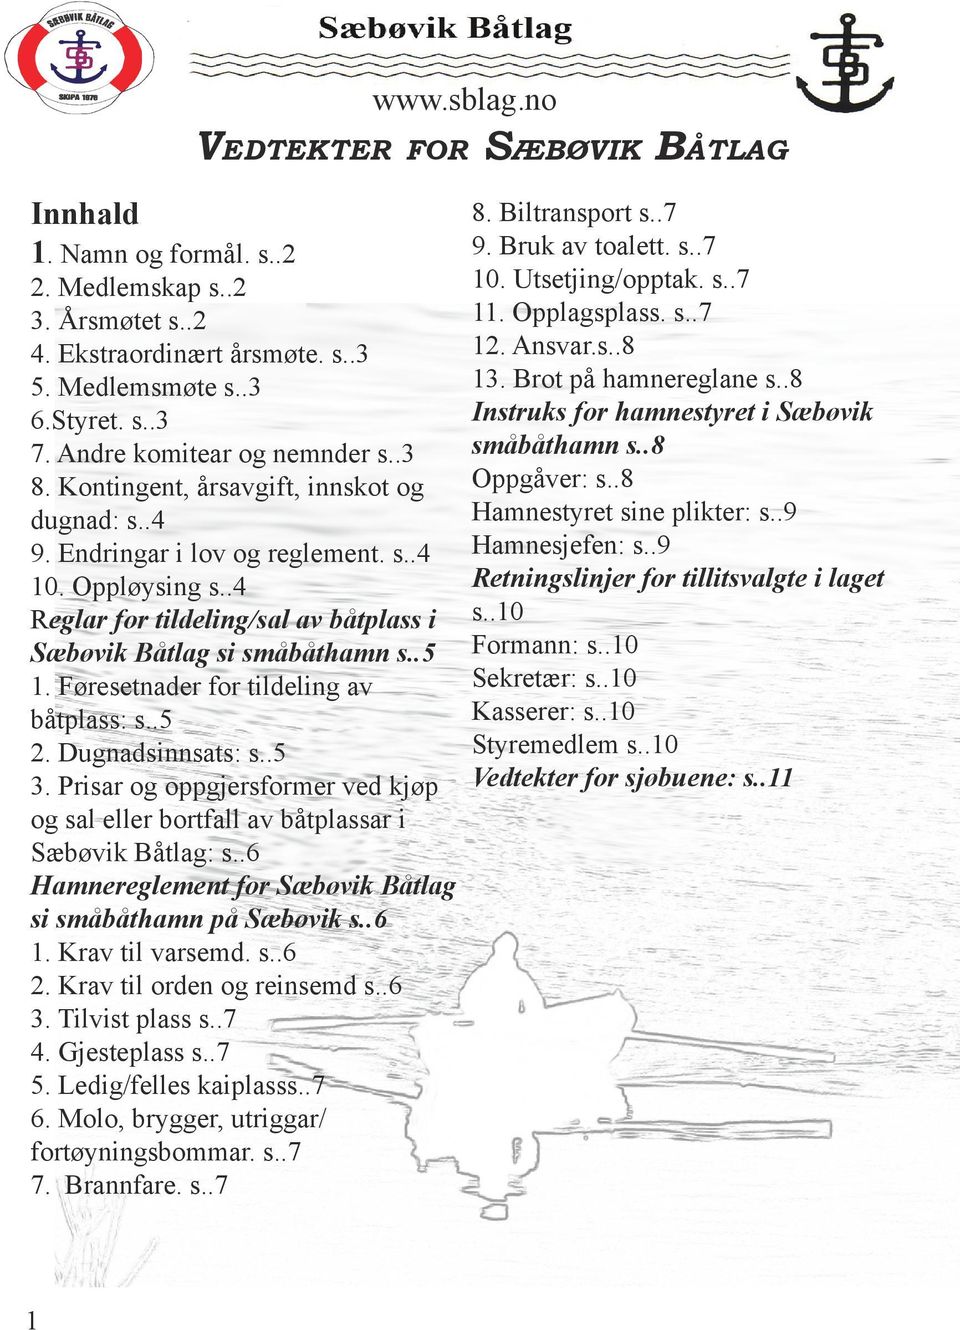 Føresetnader for tildeling av båtplass: s..5 2. Dugnadsinnsats: s..5 3. Prisar og oppgjersformer ved kjøp og sal eller bortfall av båtplassar i Sæbøvik Båtlag: s.